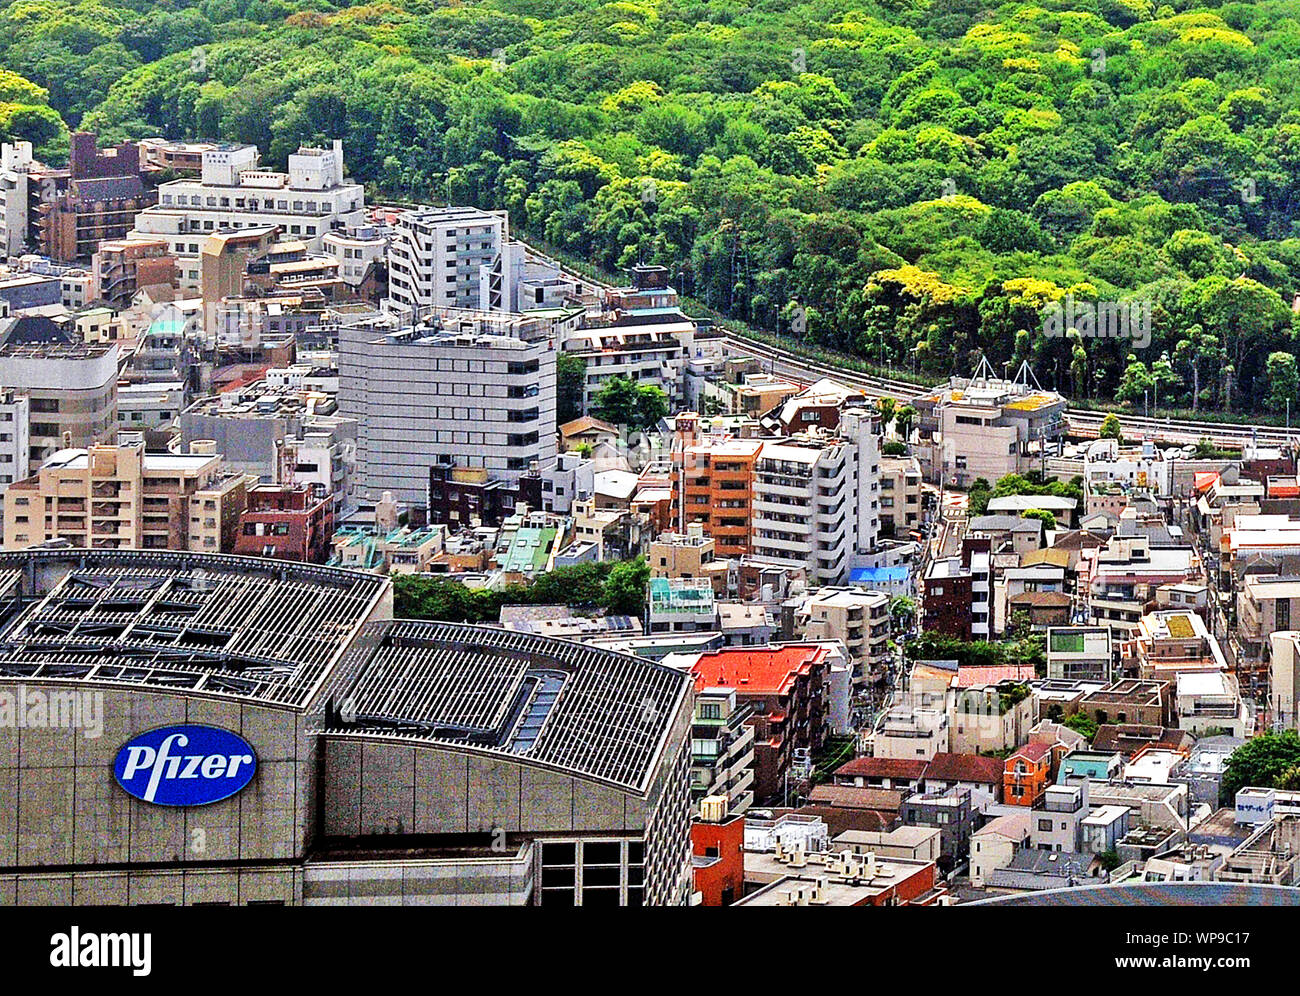 Vue aérienne sur l'immeuble Pfizer et Parc Yoyogi, Shibuya, Tokyo, Japon Banque D'Images